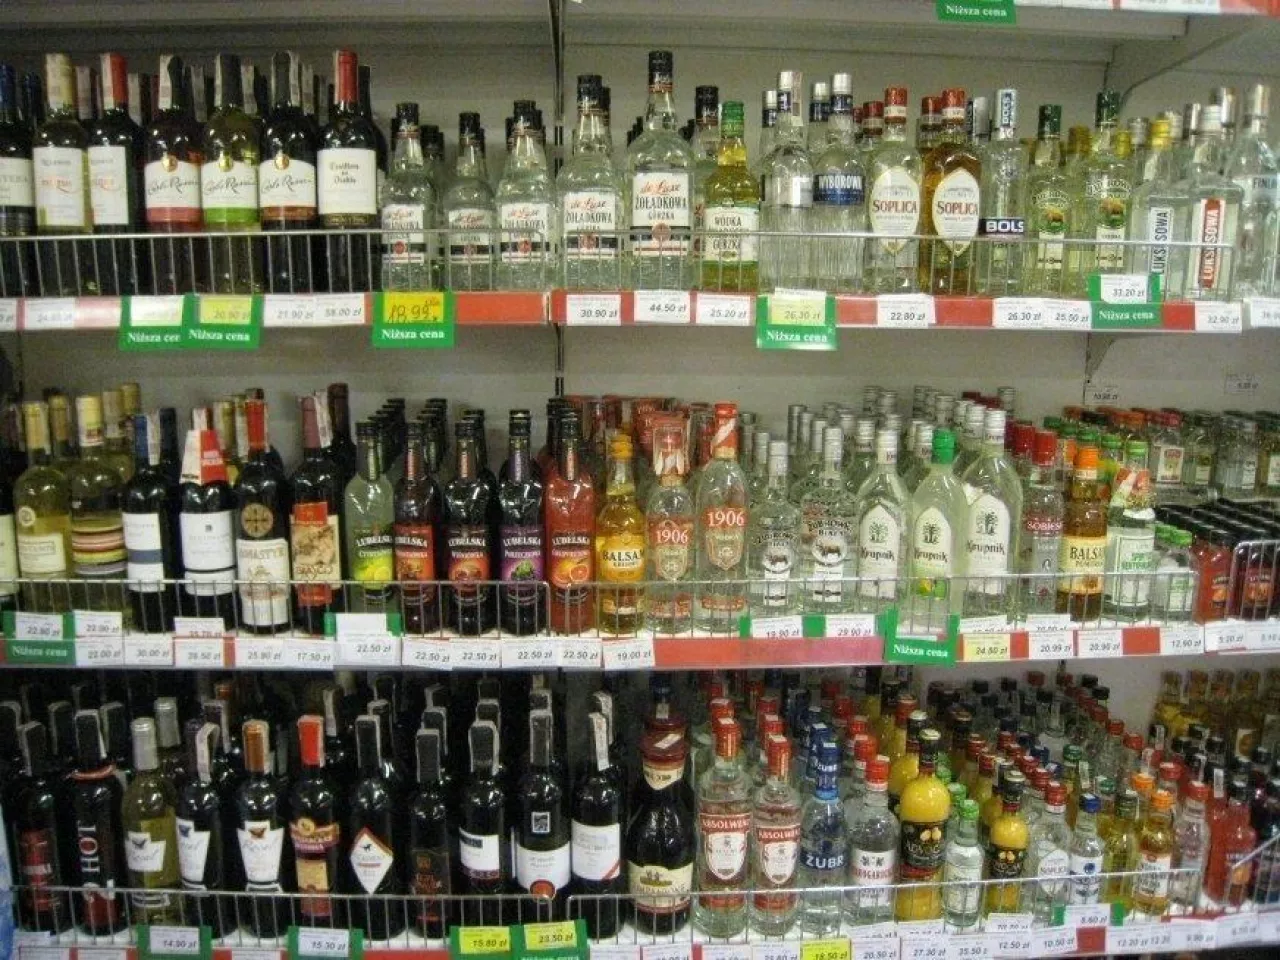 Wódki smakowe w opakowaniach o wielkości do 200 ml są coraz częściej kupowane (archiwum WH)